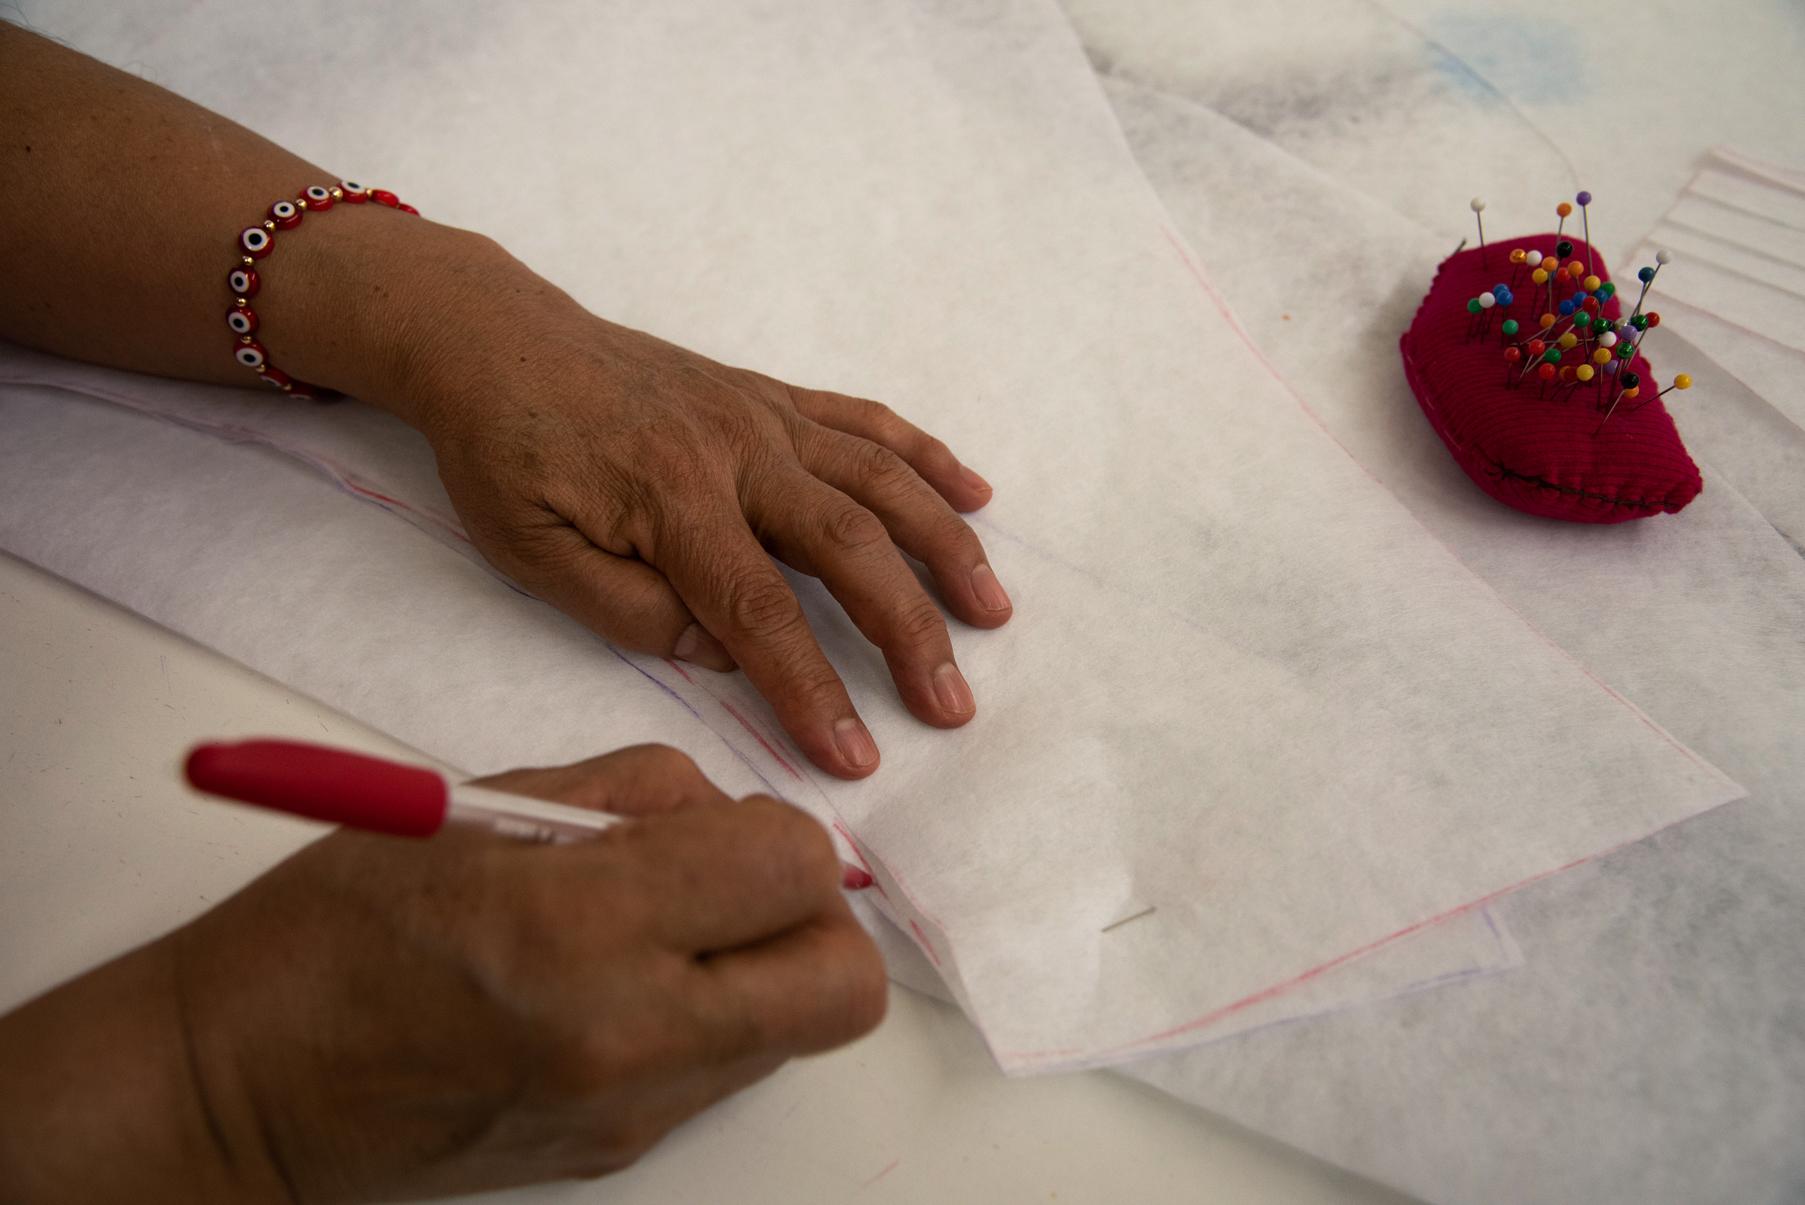 Una costurera tomando unas medidas sobre un lienzo